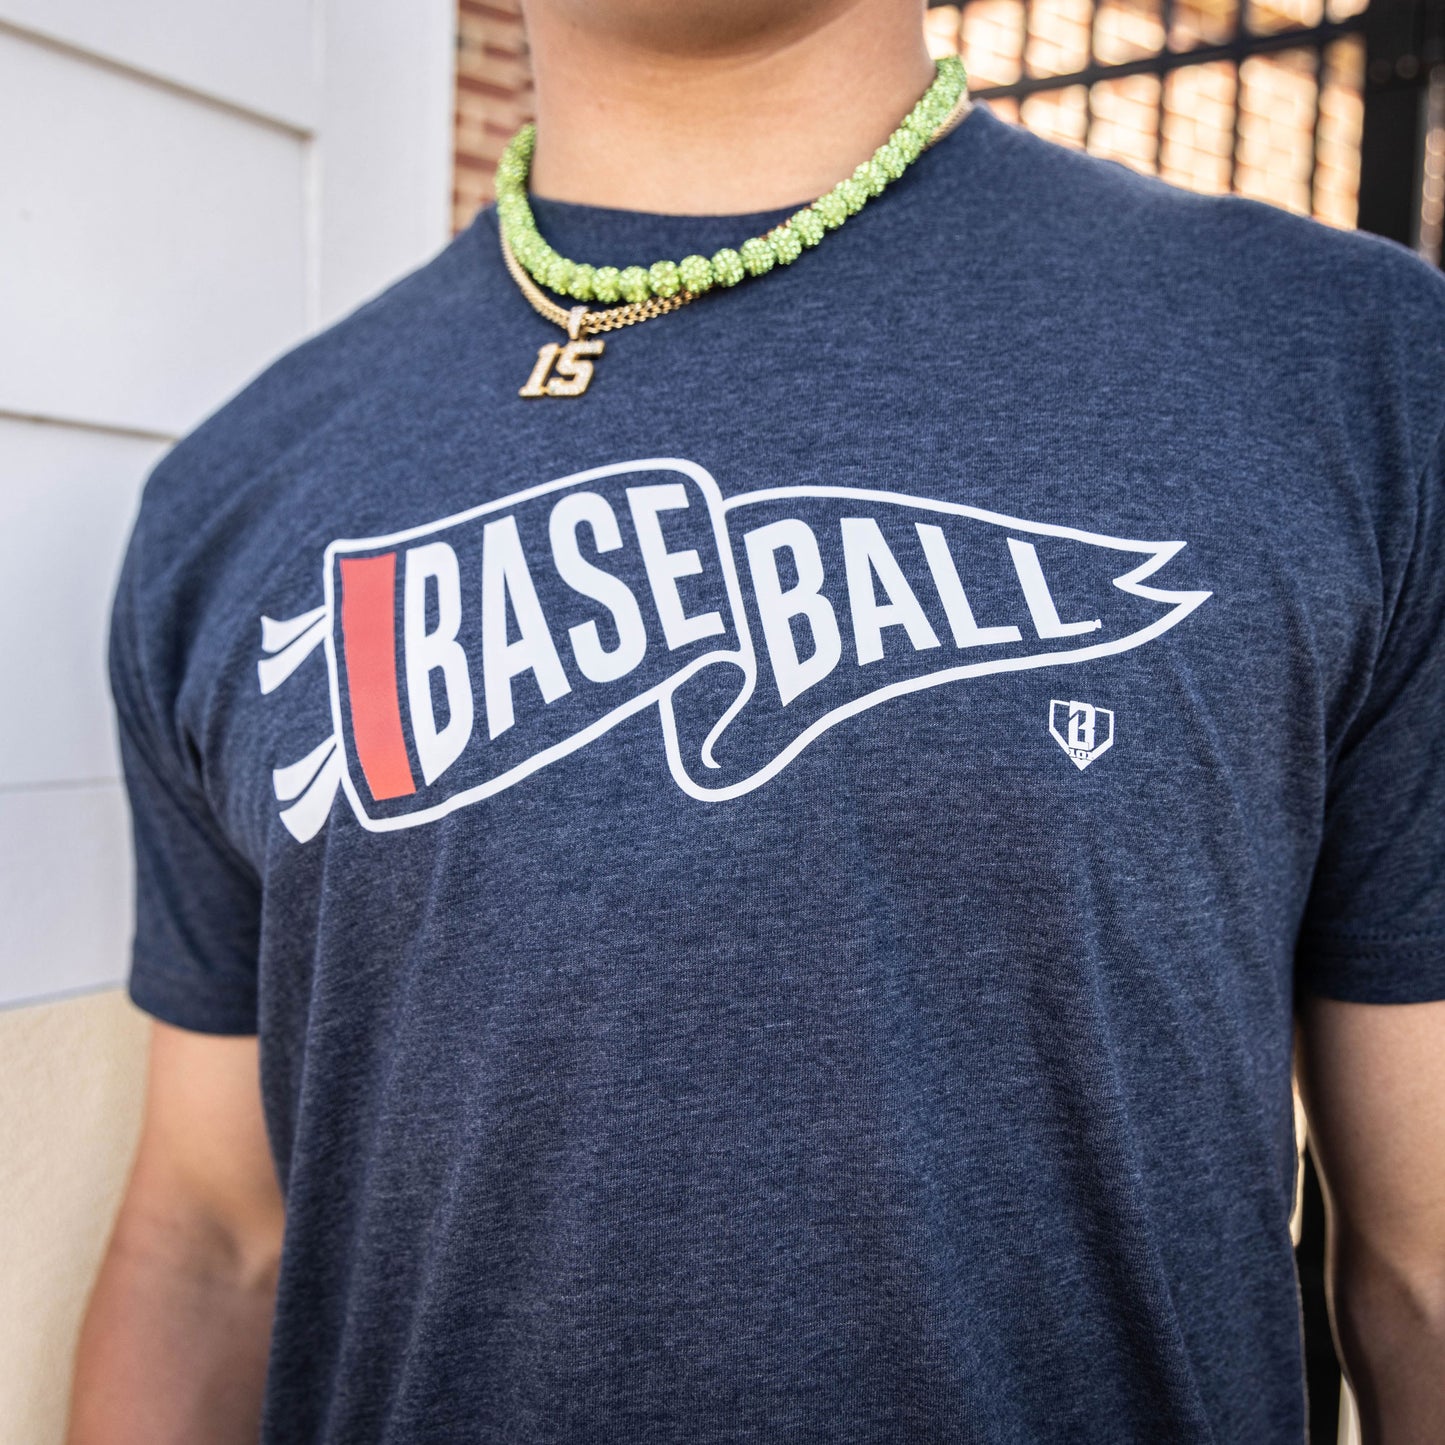 USA baseball tshirt, USA baseball tee